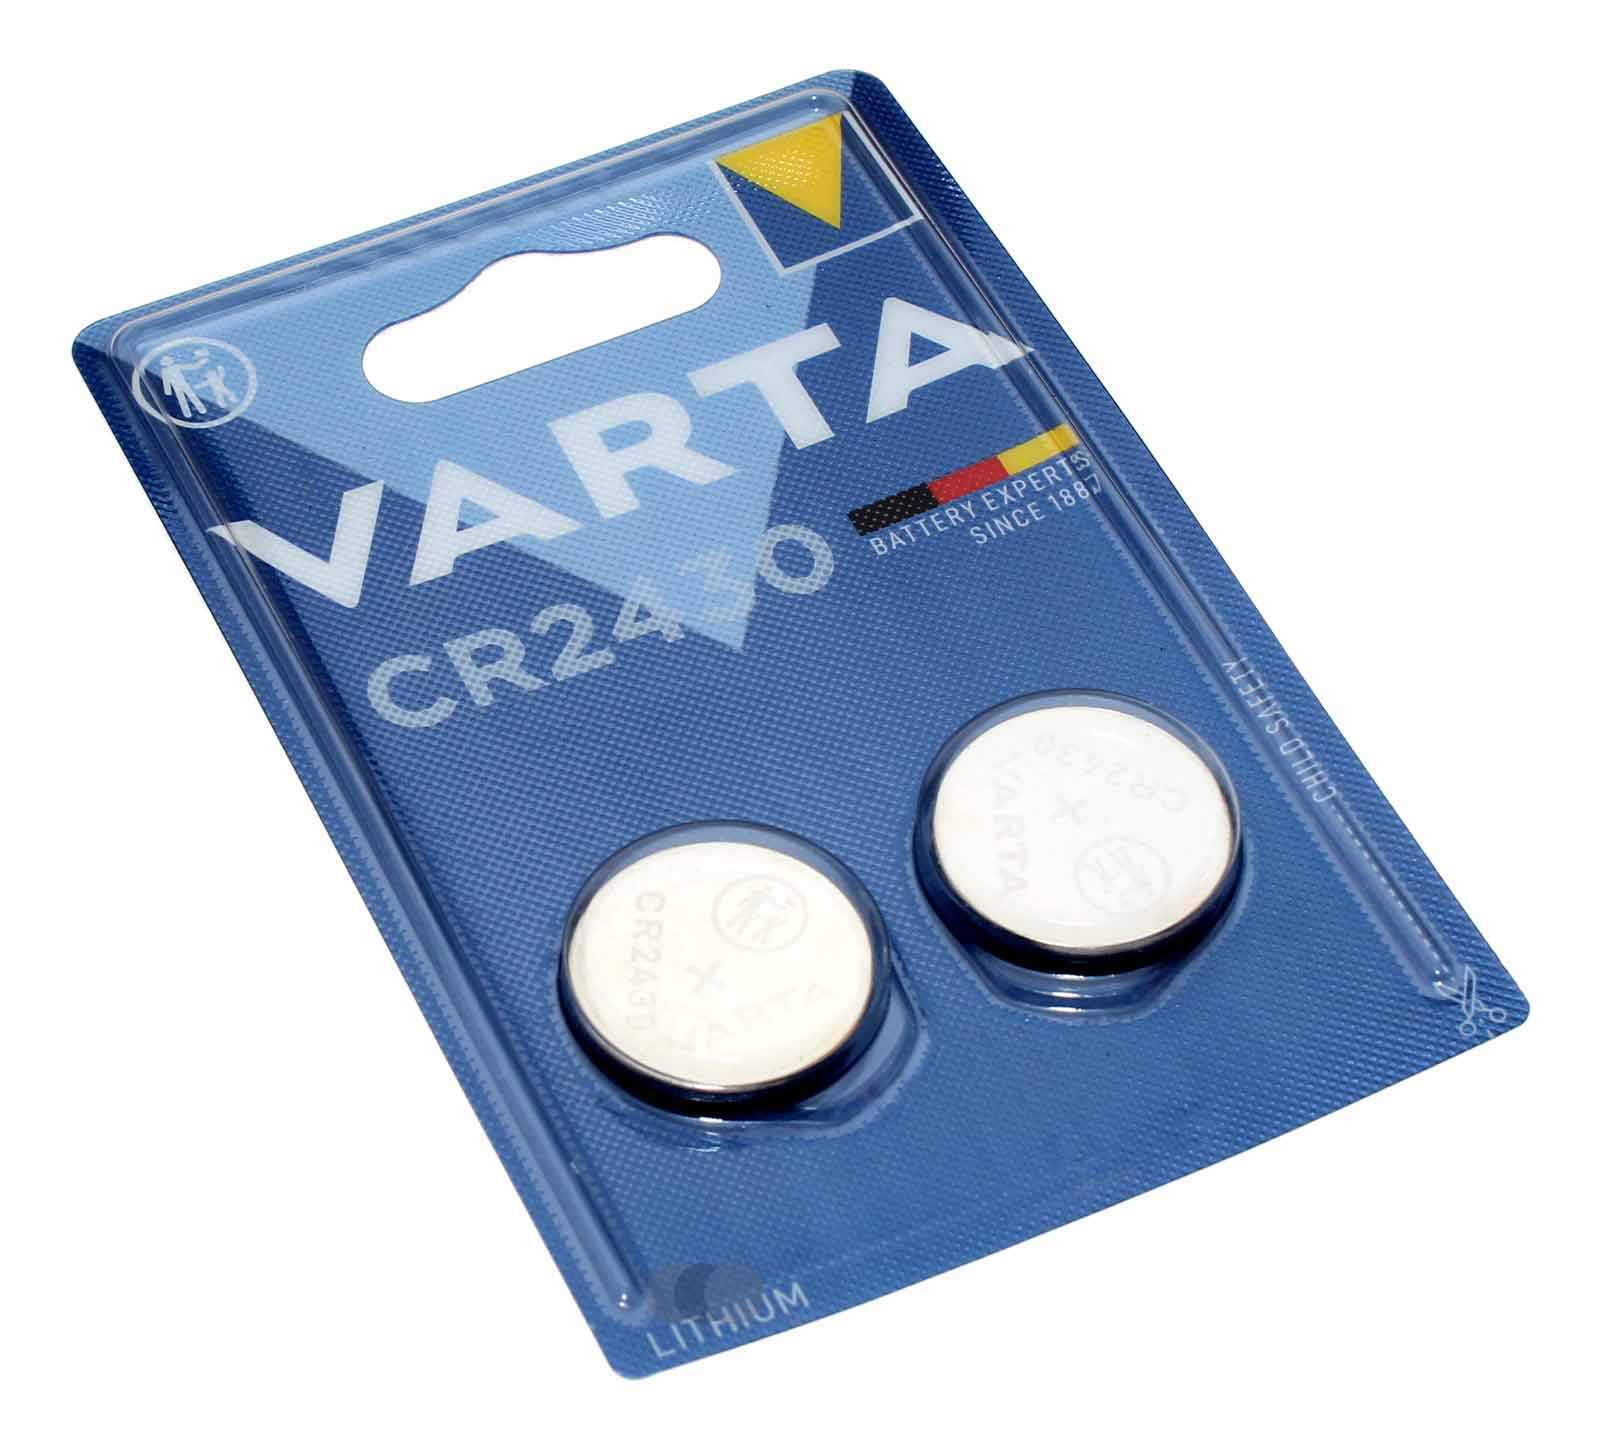 2x Varta CR2430 Lithium Knopfzelle Batterie für Uhren Autoschlüssel u.a., wie BR2430, DL2430 ECR2430, 3V, 280mAh